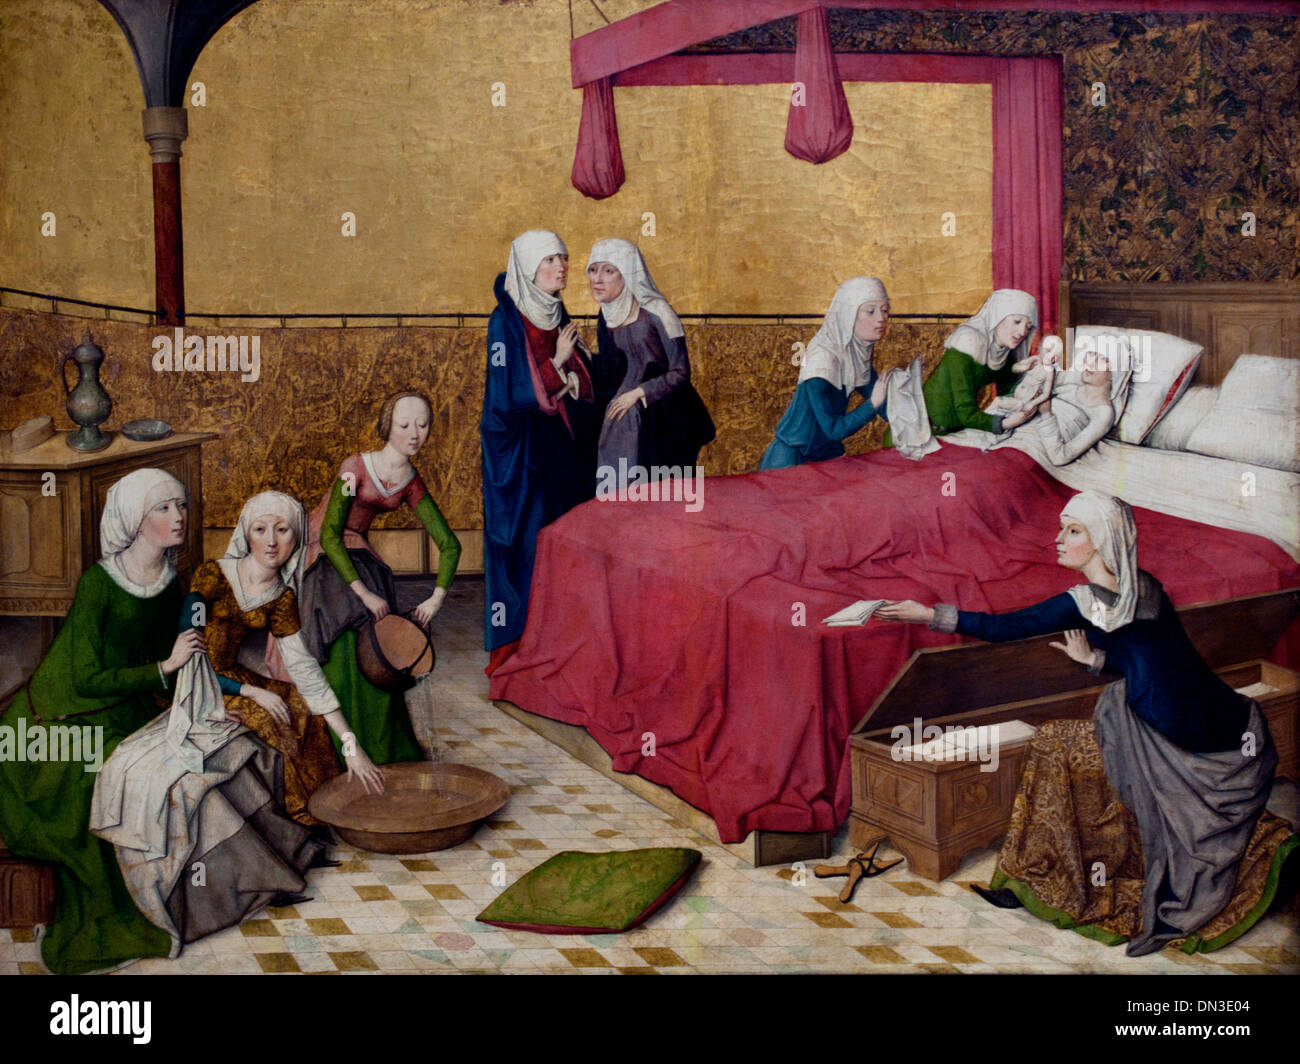 Maria Geburt par Meister des Marienlebens - la naissance de Marie par le maître de la vie de la Vierge de Cologne Cologne Allemagne Allemand 1460-90 Banque D'Images